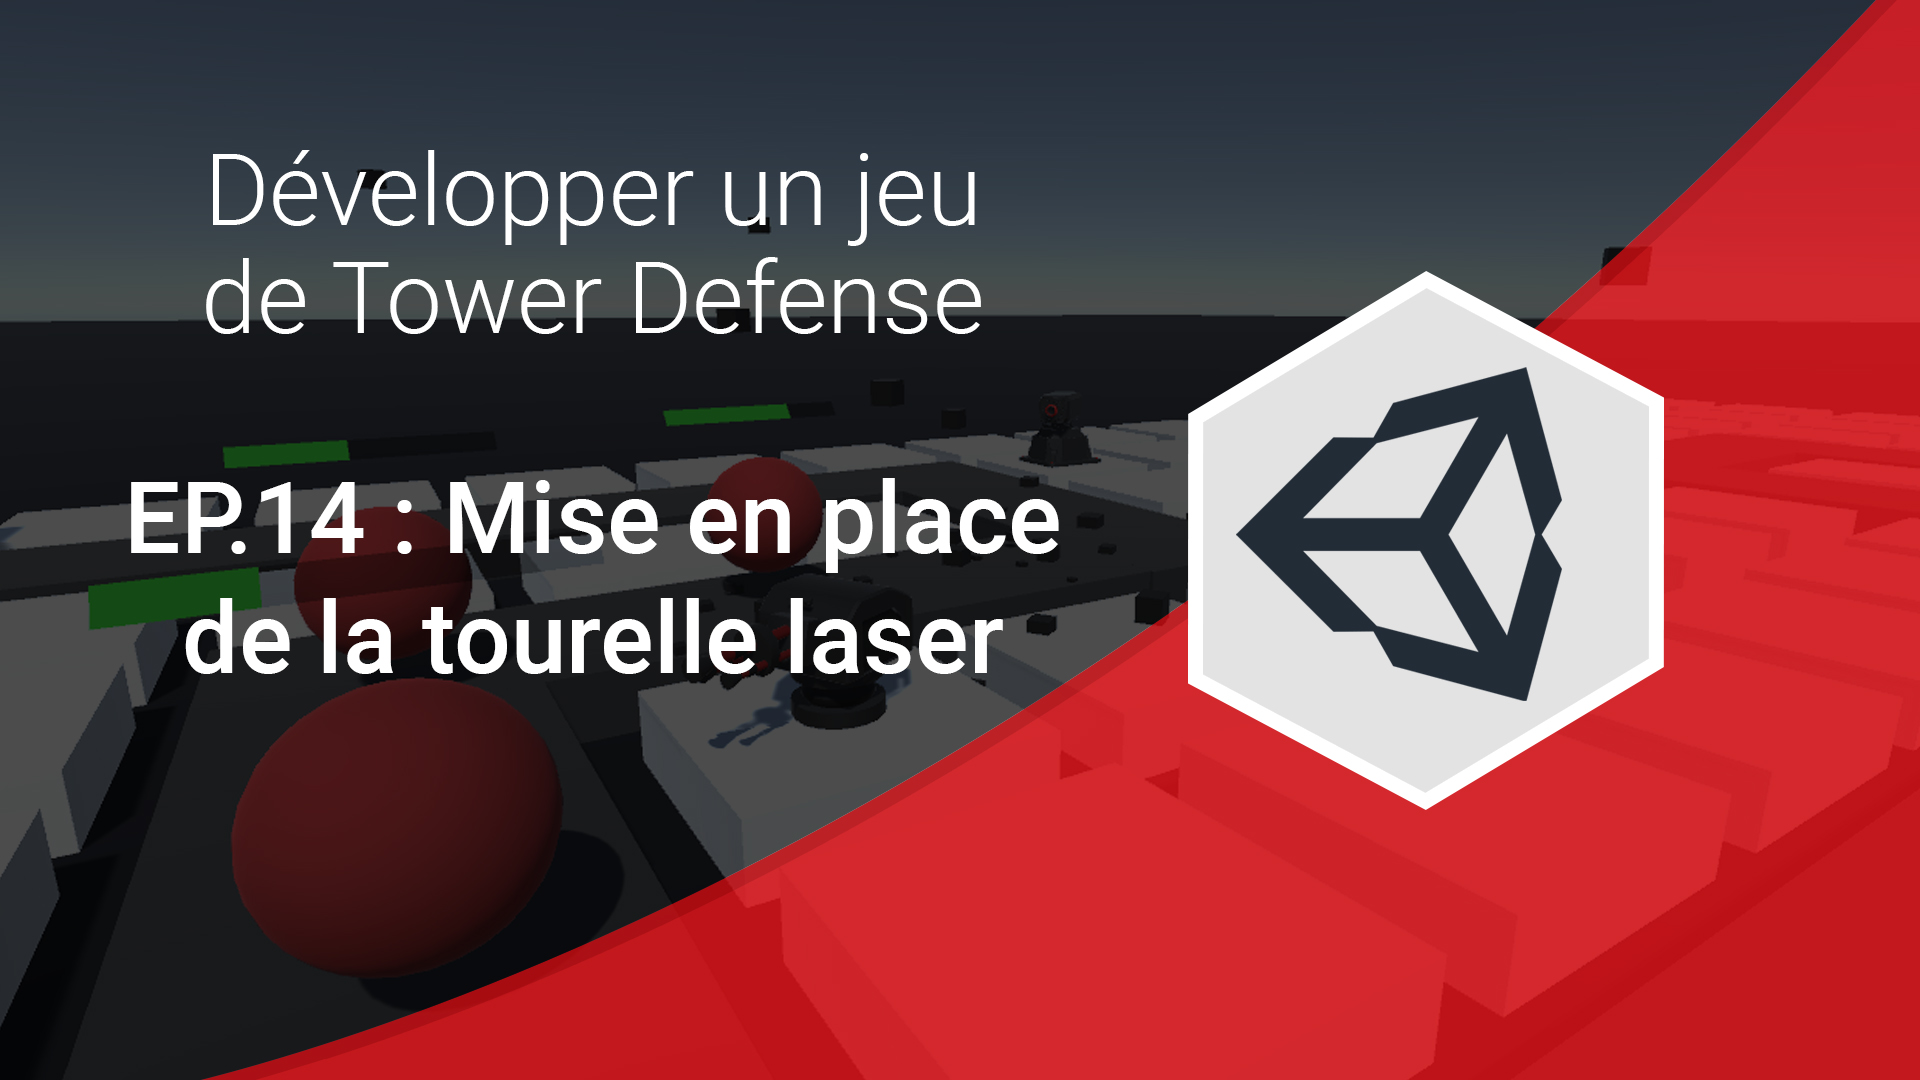 mise en place de la tourelle laser série tower defense unity 3d